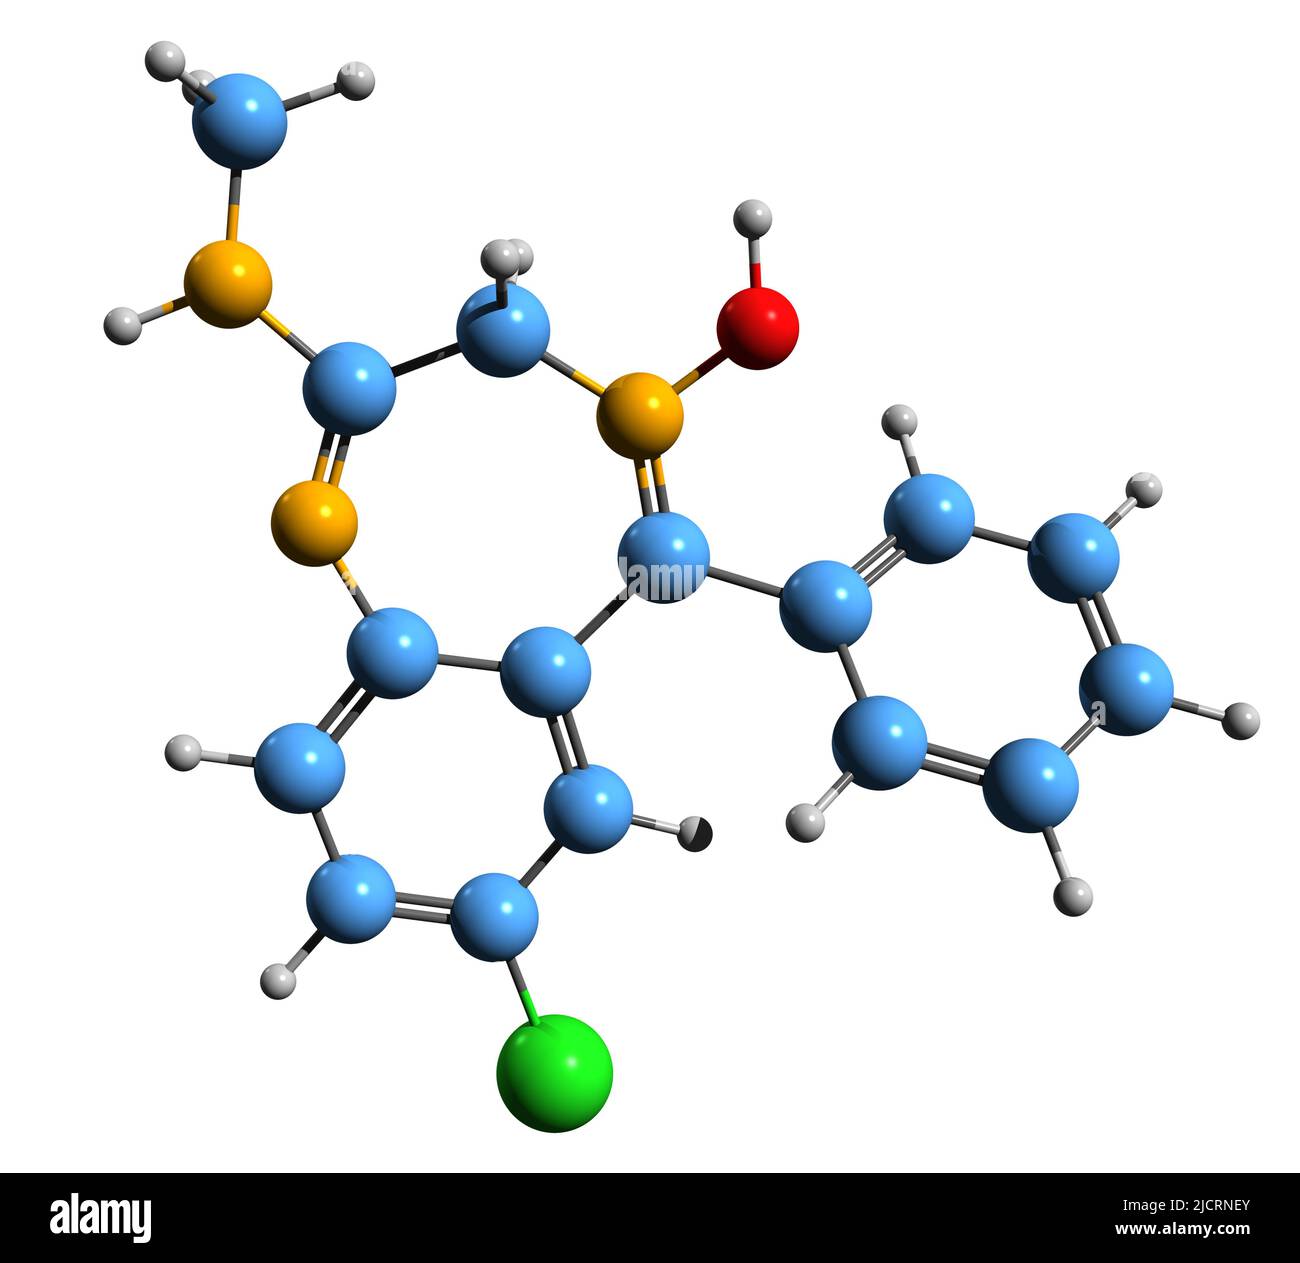 3D Abbildung der Skelettformel von Chlordiazepoxid - molekularchemische Struktur sedativer und hypnotischer Medikamente auf weißem Hintergrund isoliert Stockfoto